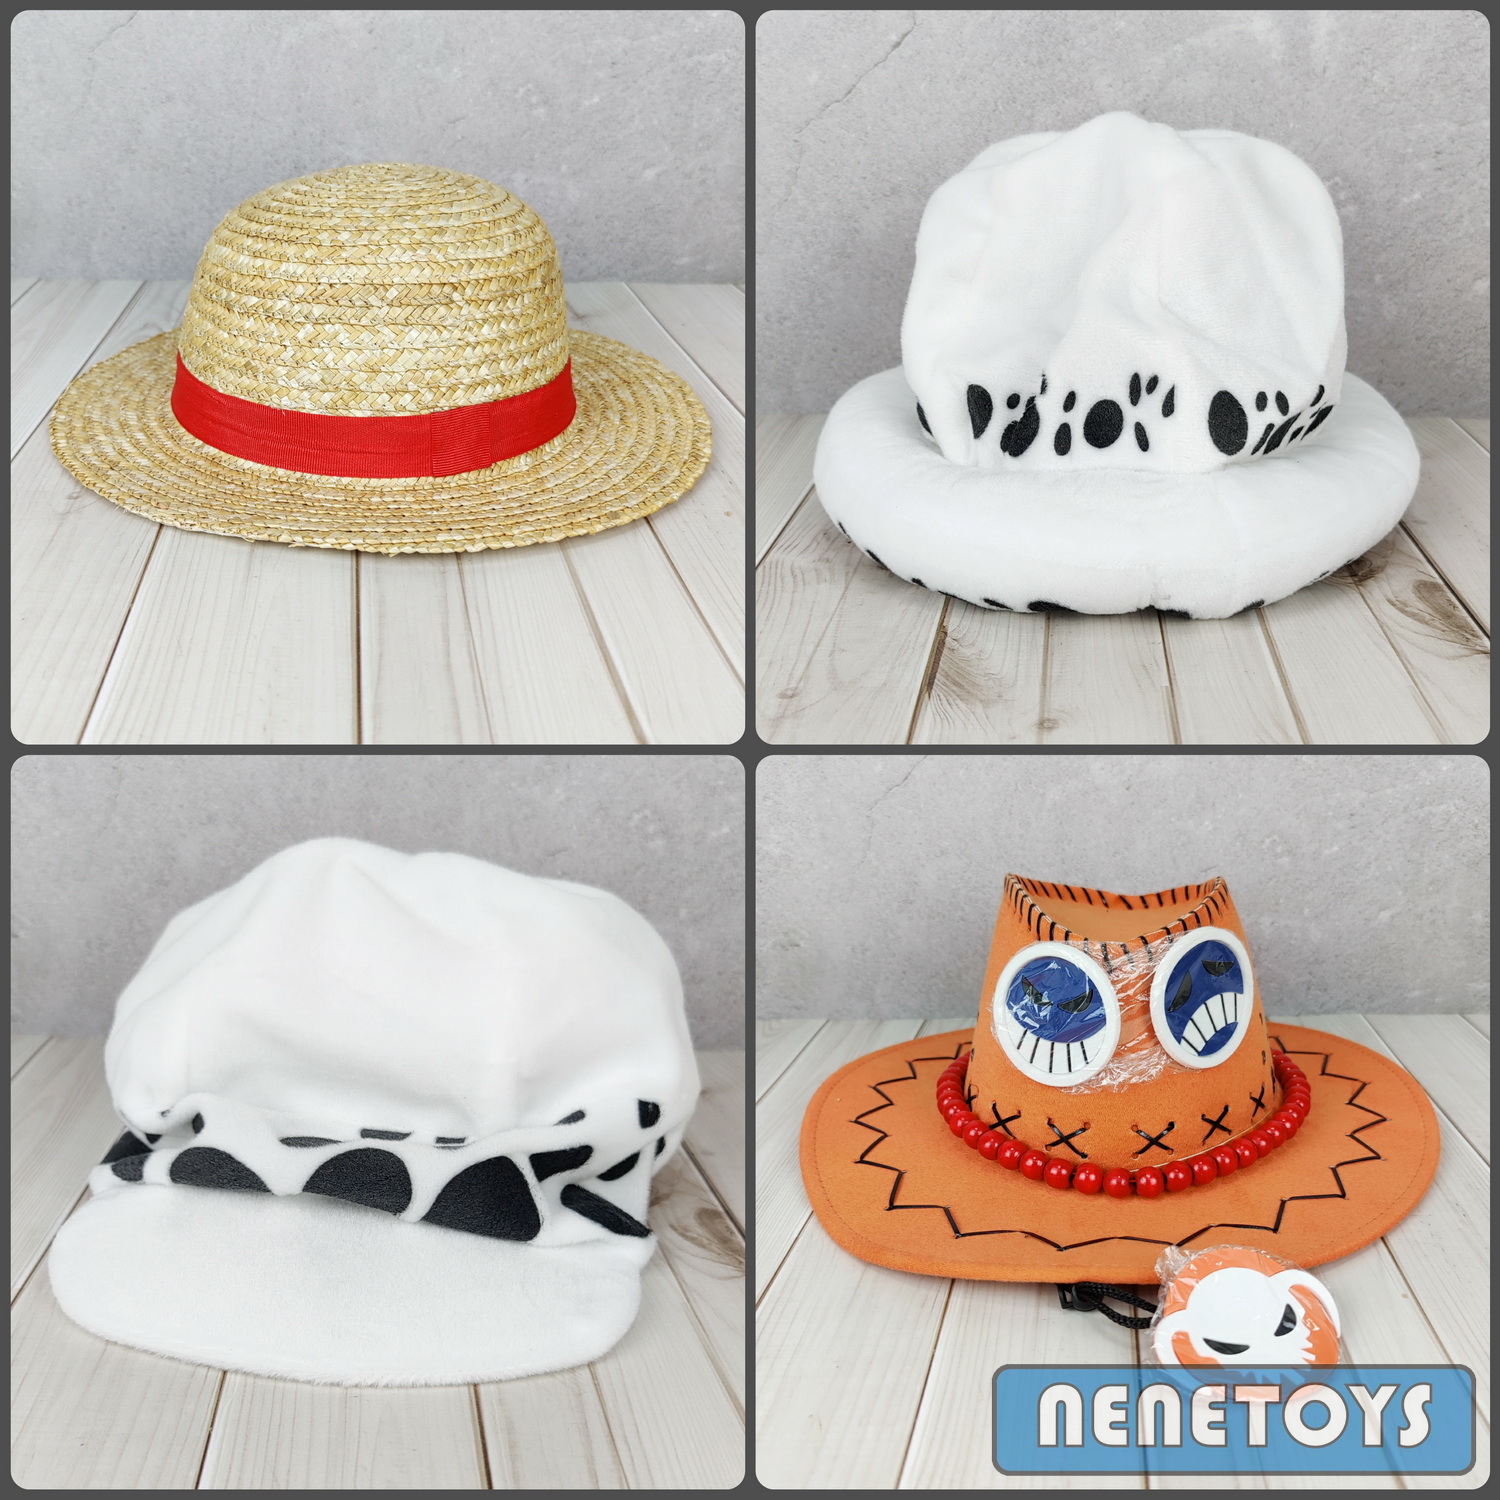 หมวกวันพีช One Piece [😍มี 4 แบบให้เลือก ] ลูฟี่ / เอส / ลอว์ หมวกคอสเพลย์ ราคาไม่แพง